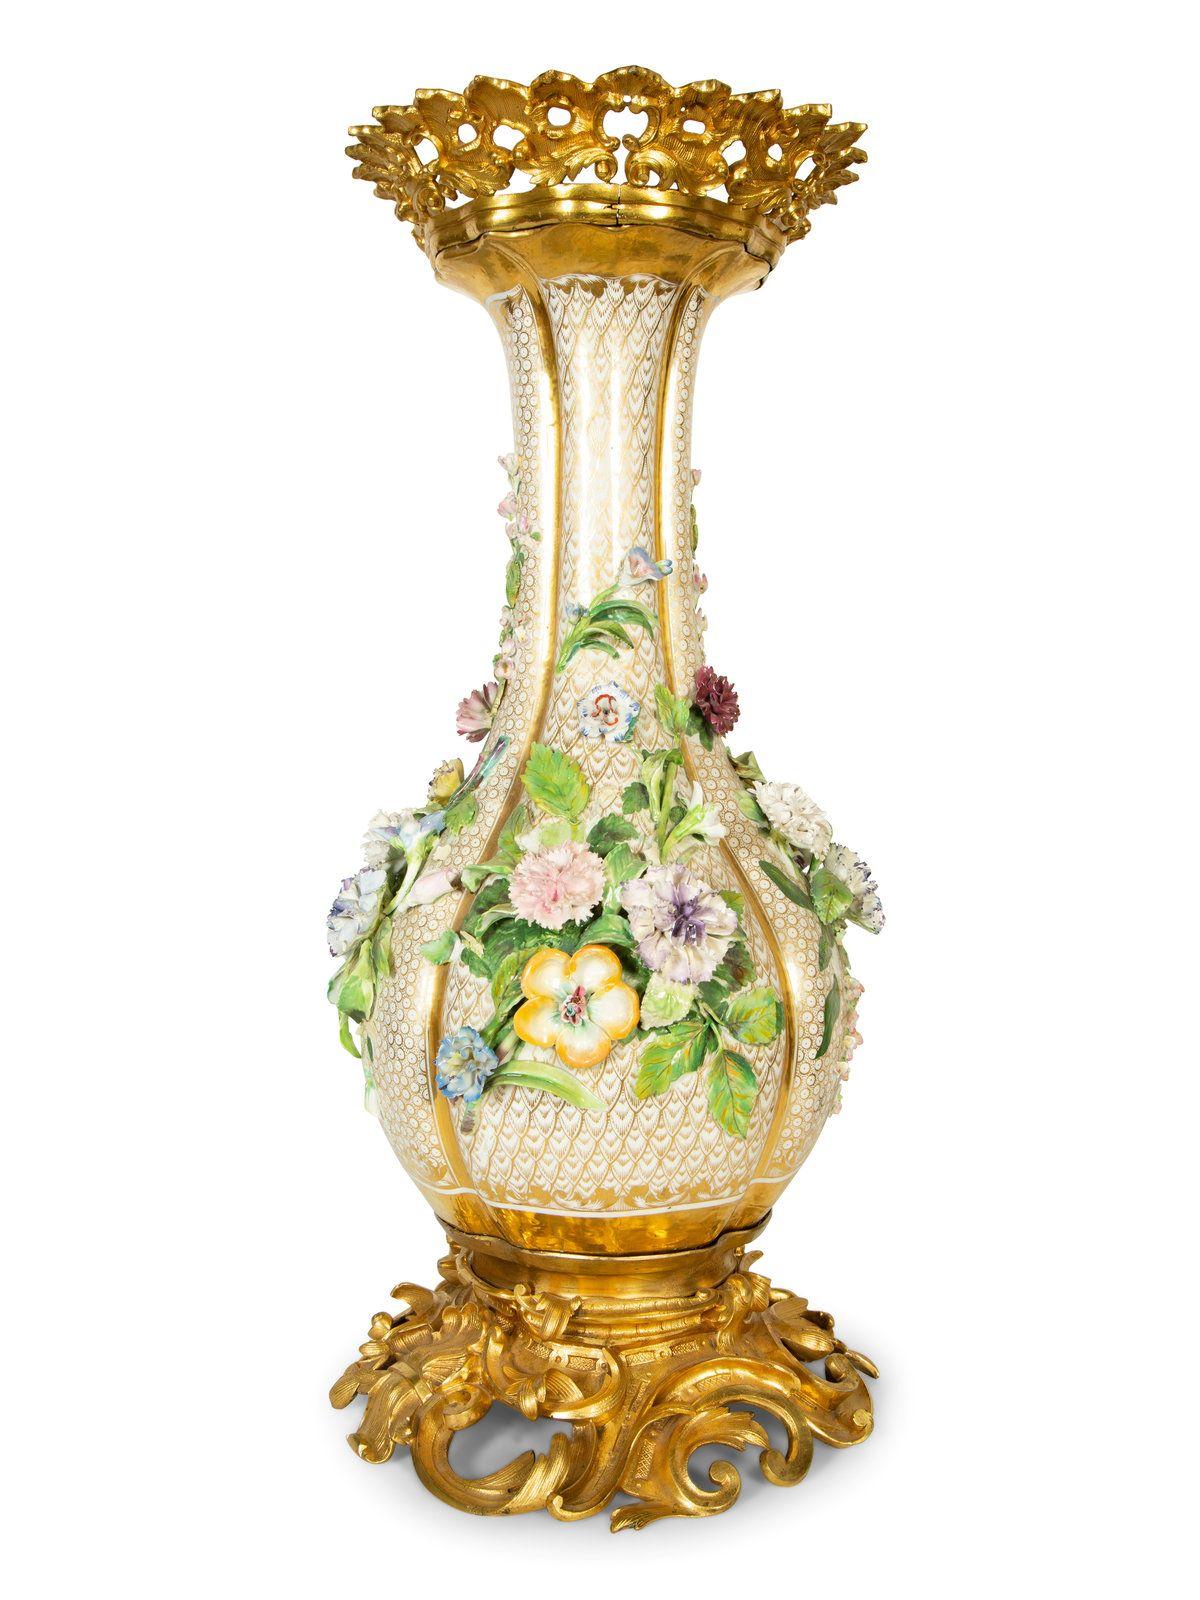 Eine sehr beeindruckende Vase aus französischem Porzellan, verziert mit applizierten, polychromen Blumenbüscheln, mit Ormolu-Boden und -Rand. 19. Jahrhundert
Maße: Höhe 26